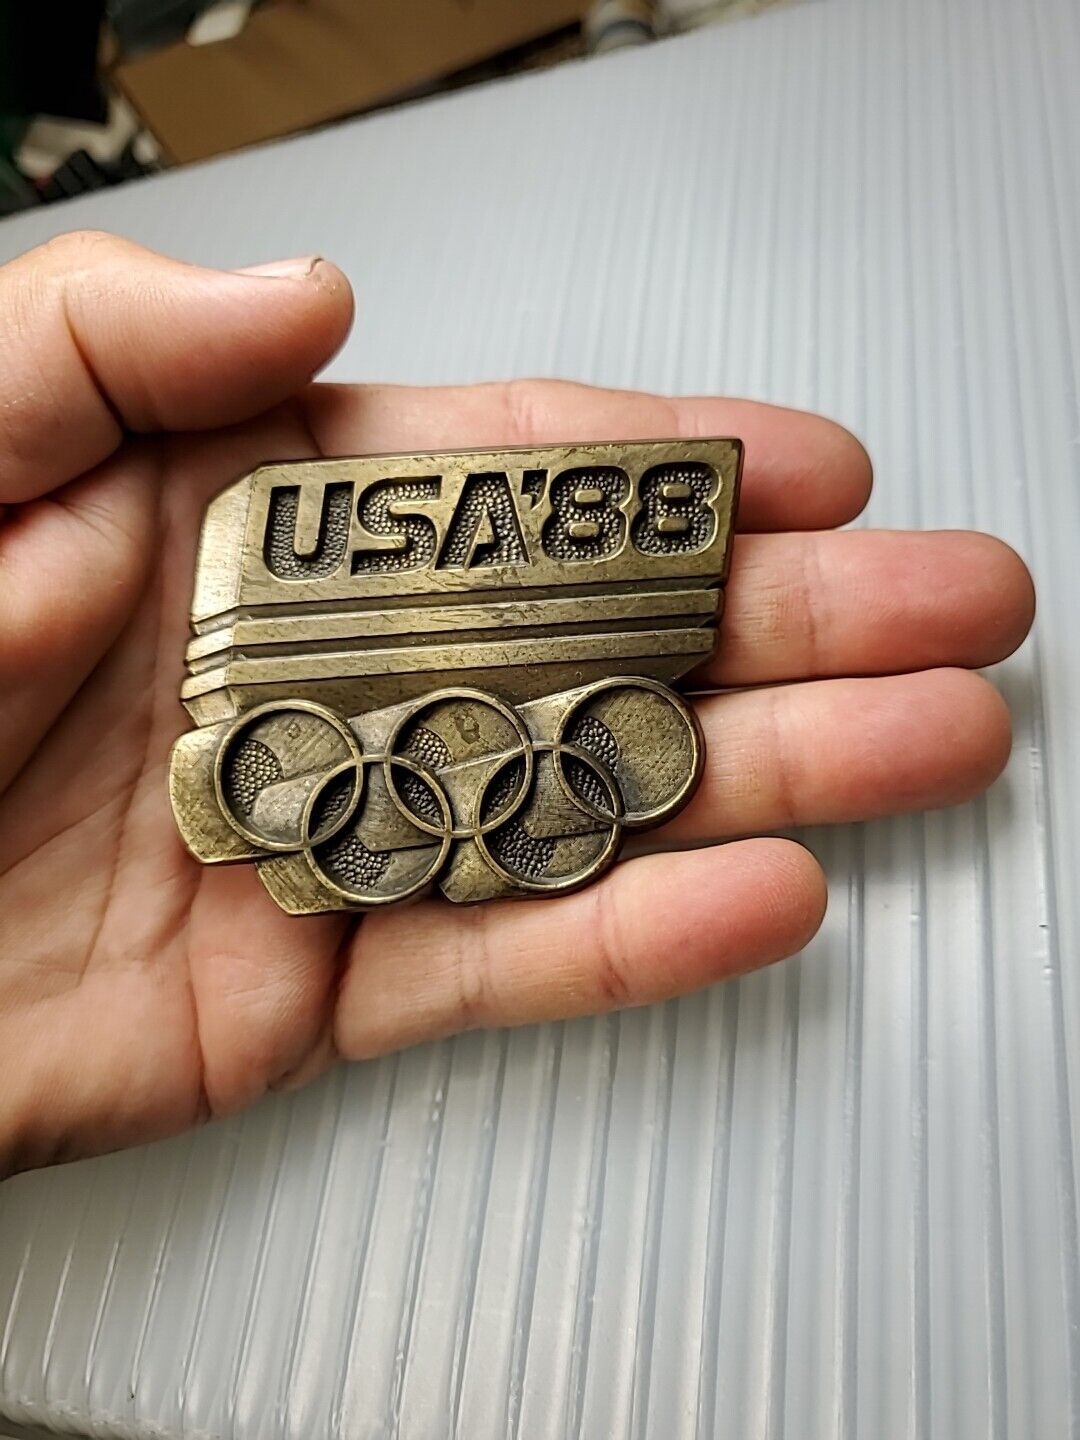 1988 Vintage USA '88 Olympics Belt Buckle - image 2